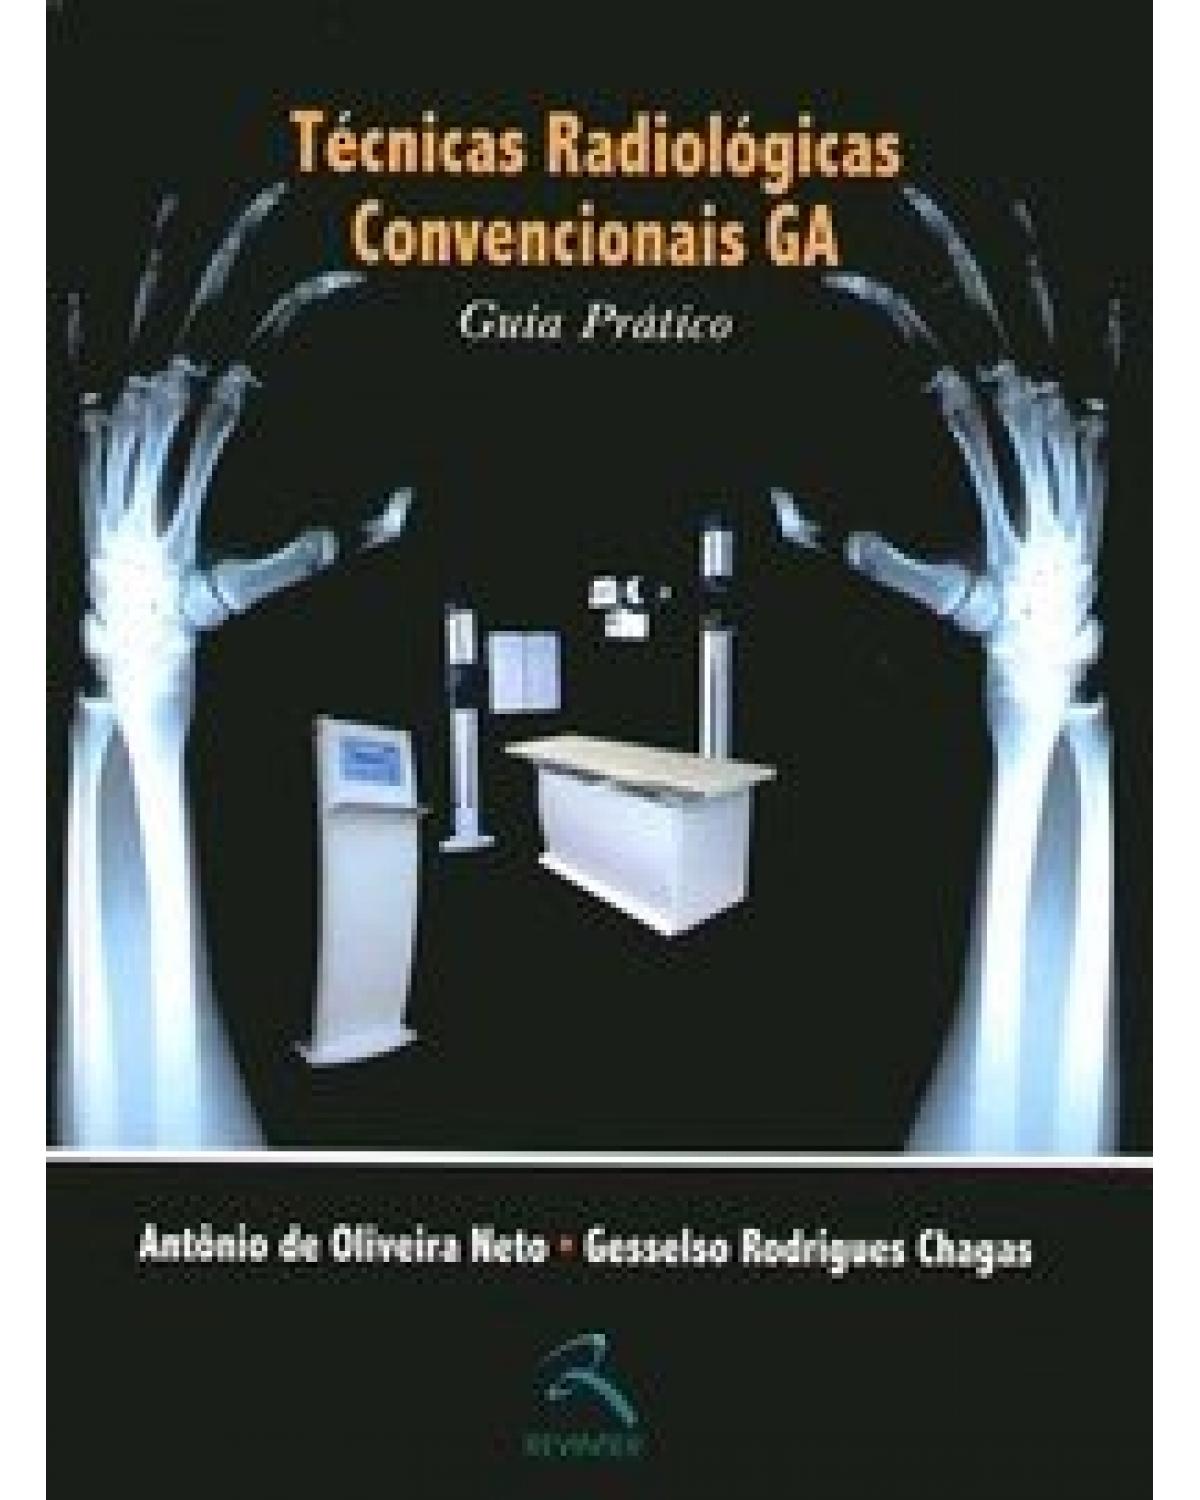 Técnicas radiológicas convencionais - guia prático - 1ª Edição | 2006